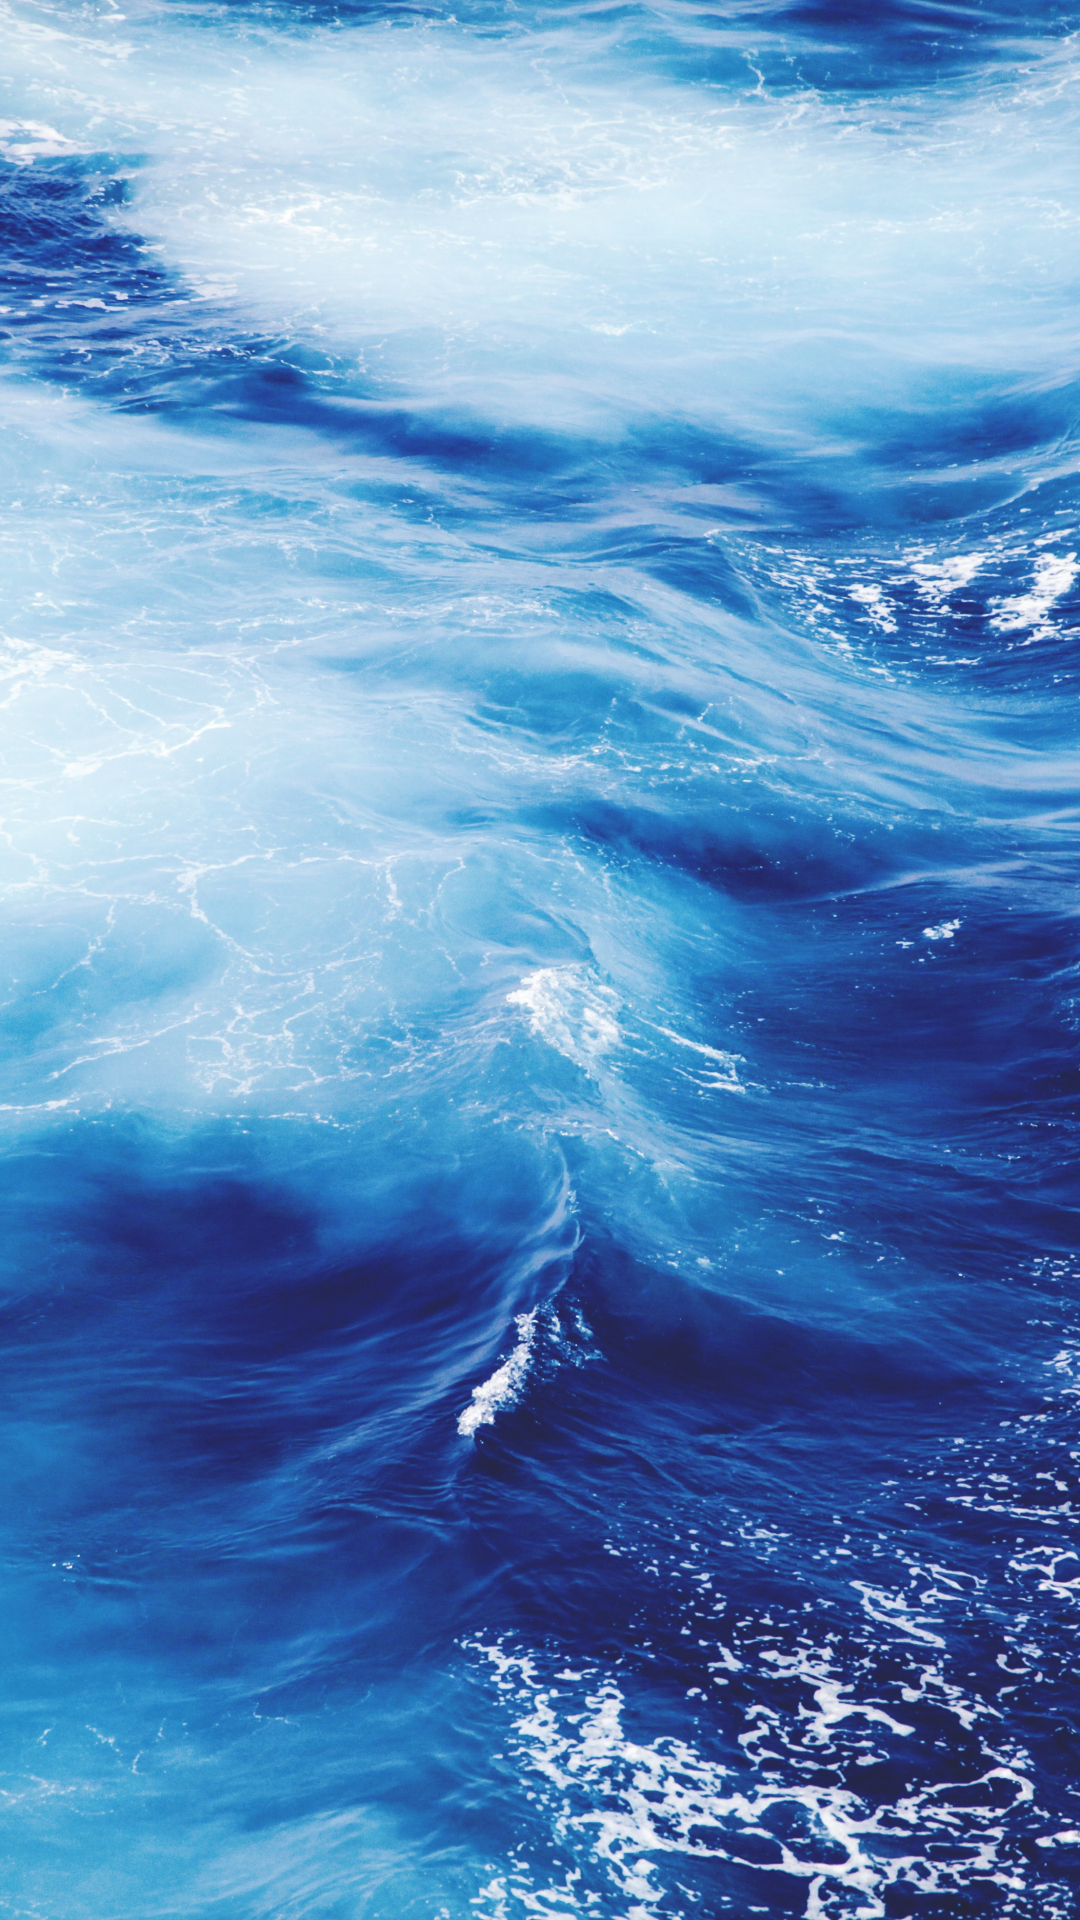 Ocean, Water, Blue iPhone Wallpaper | iDrop News